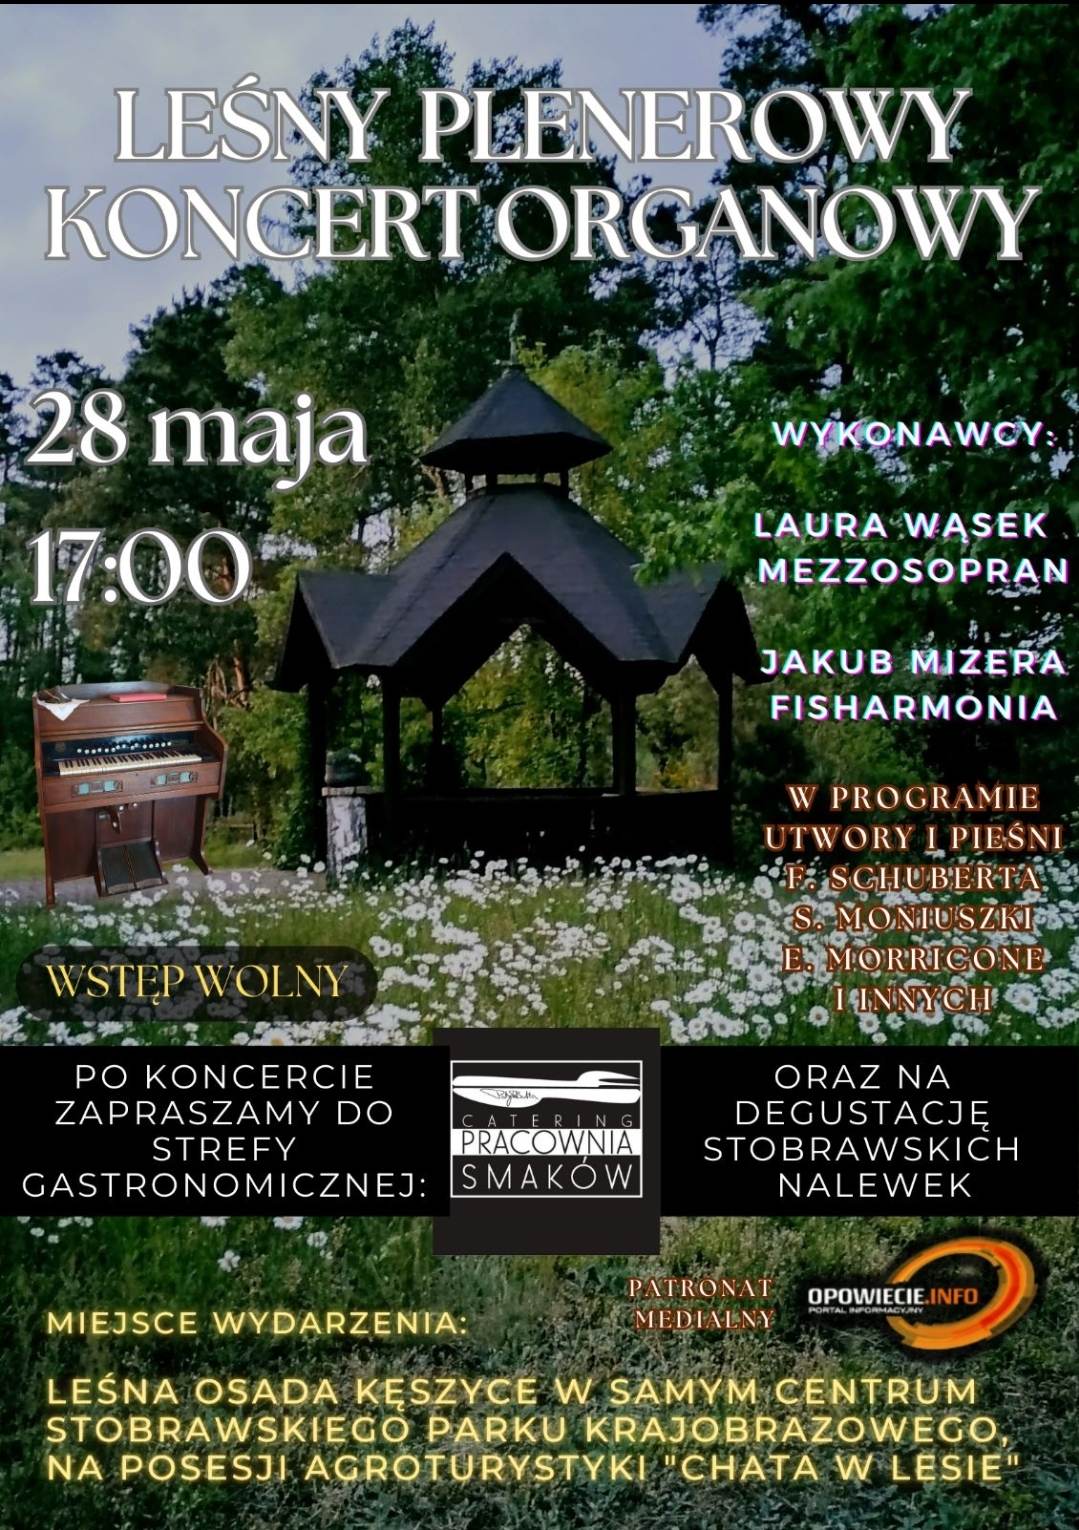 Leśny Plenerowy Koncert Organowy w Kęszycach